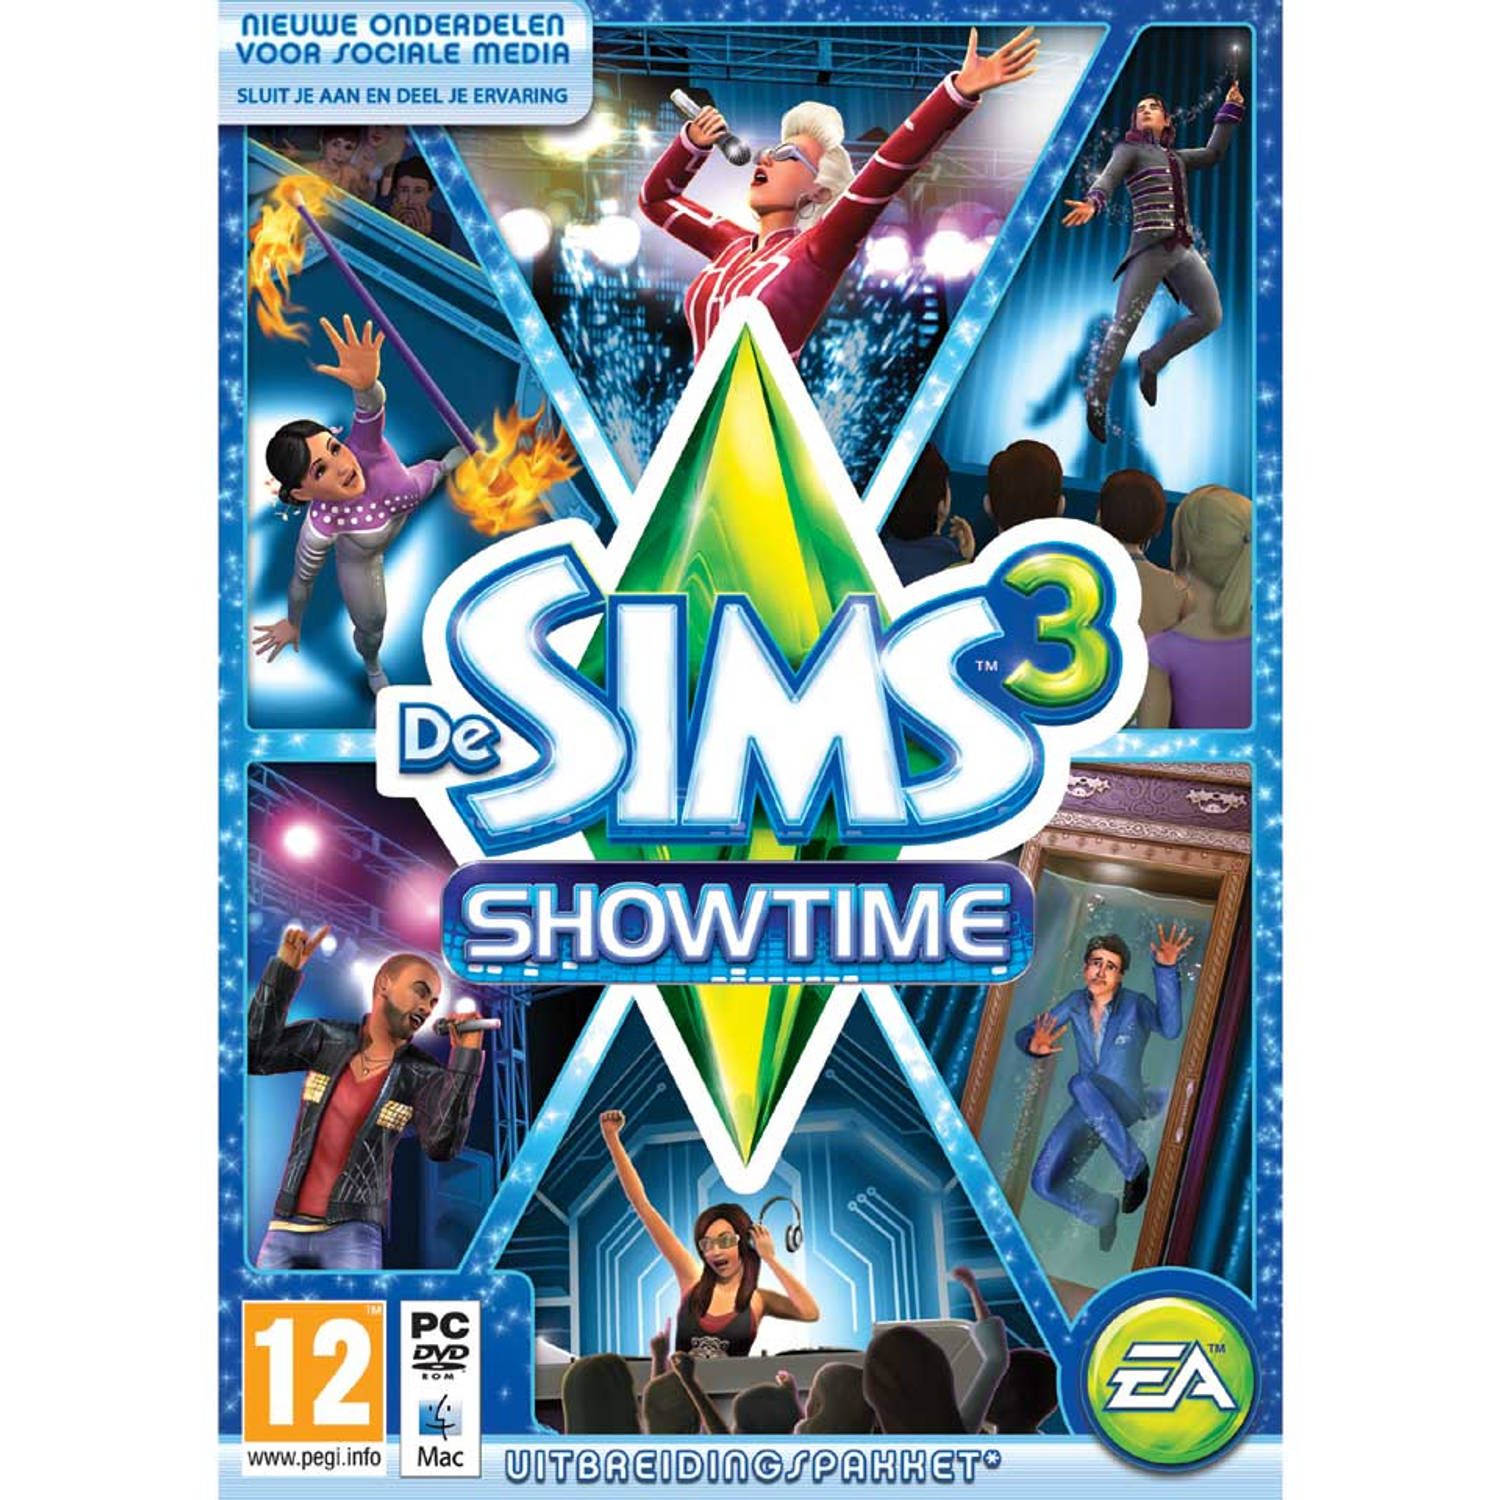 Pc De Sims 3 Showtime